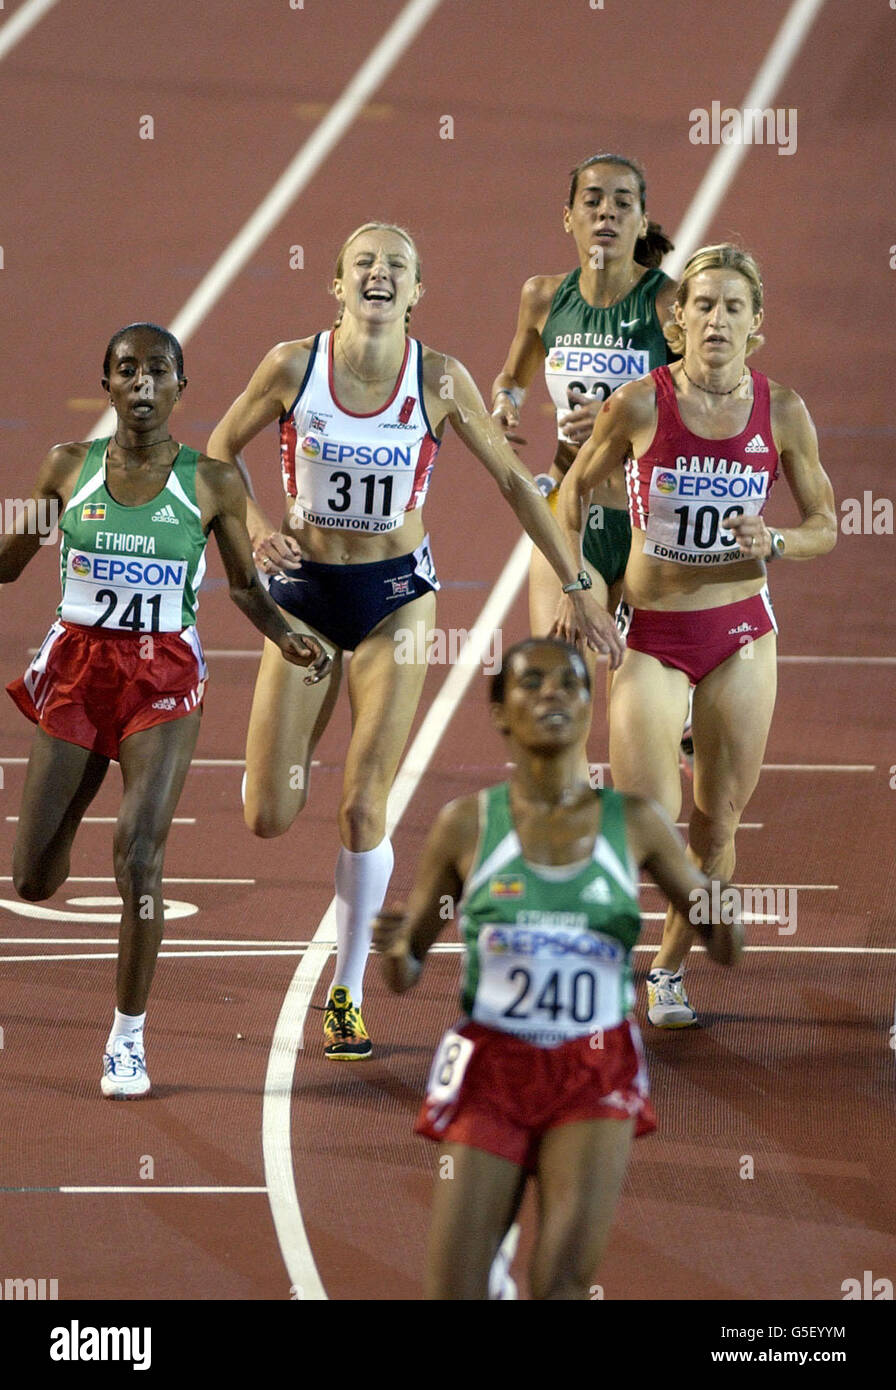 Paula Radcliffe montre sa déception de terminer à nouveau quatrième dans un championnat majeur à la ligne d'arrivée, après qu'elle a été battue aux médailles dans le 10000m aux Championnats du monde de l'IAAF à Edmonton, Canada par trois coureurs éthiopiens. Banque D'Images